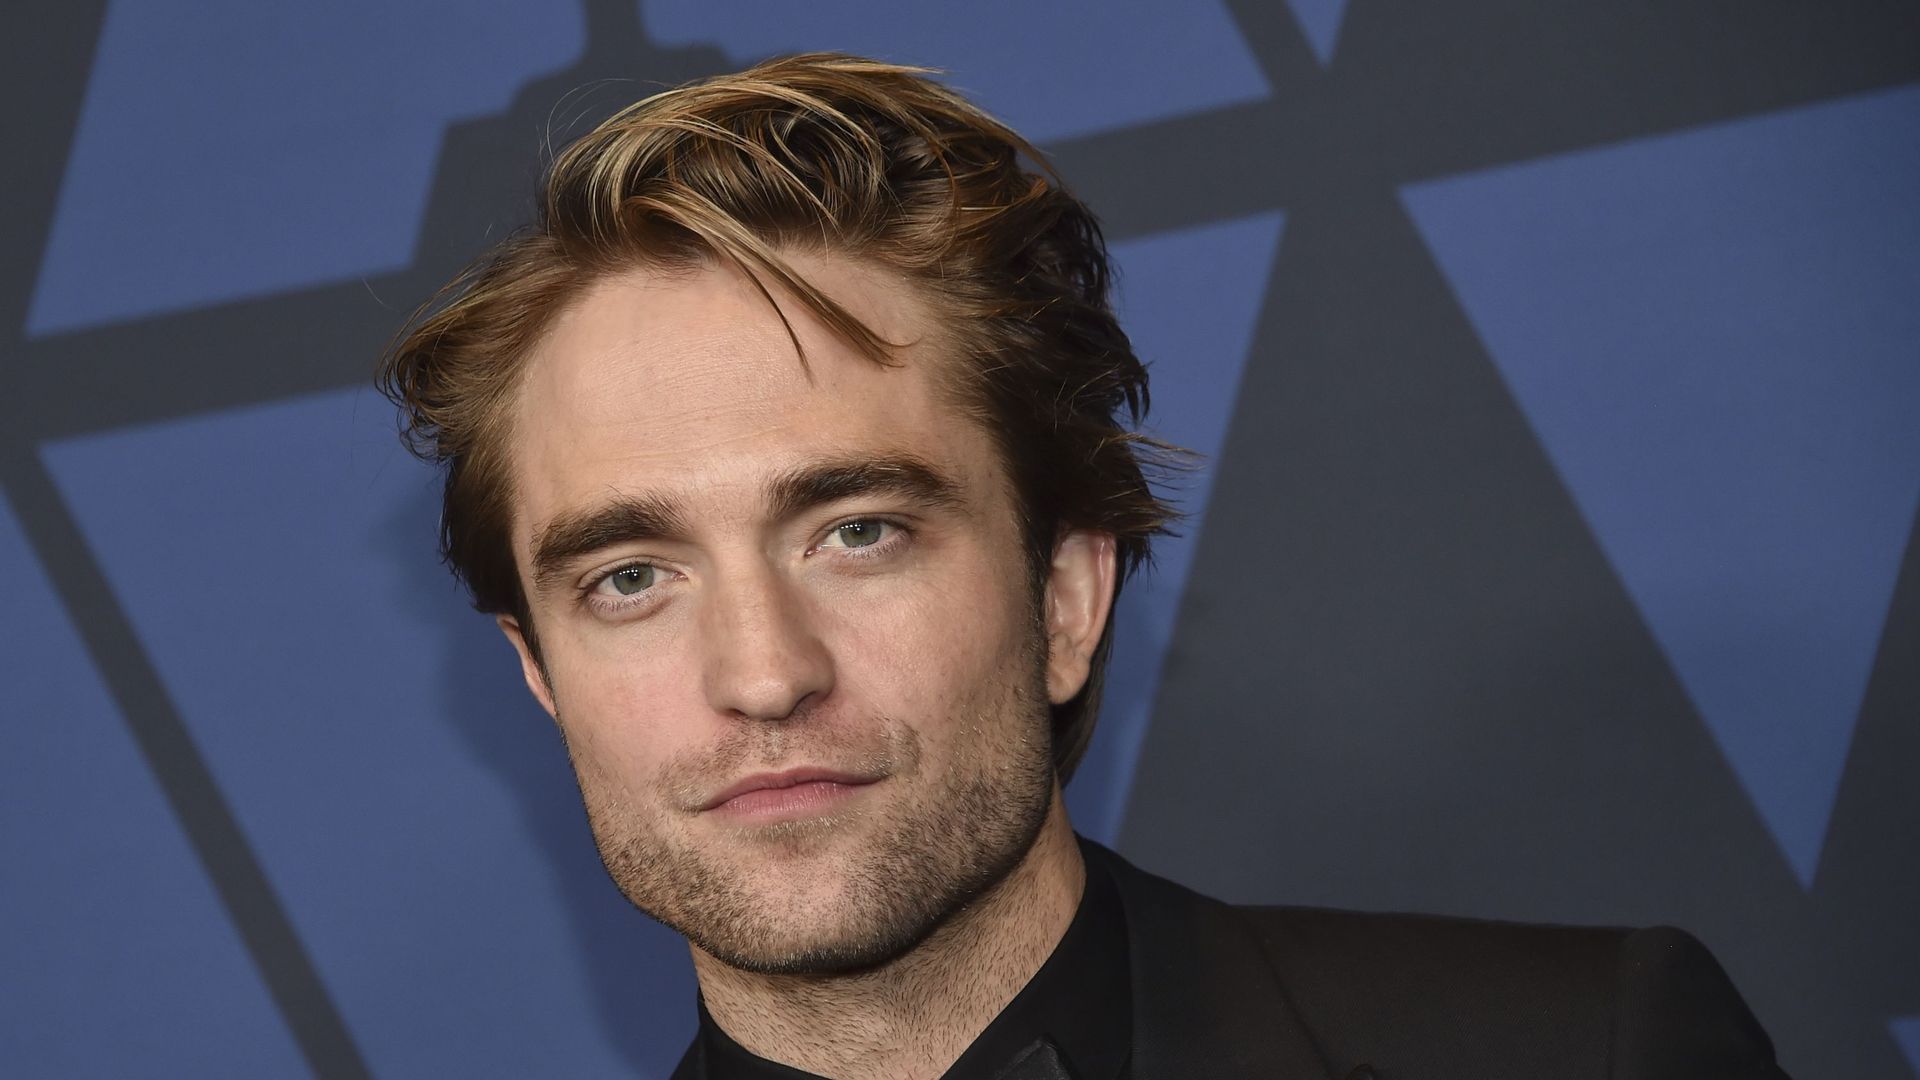 Robert Pattinson aurait le visage le plus parfait du monde selon la science